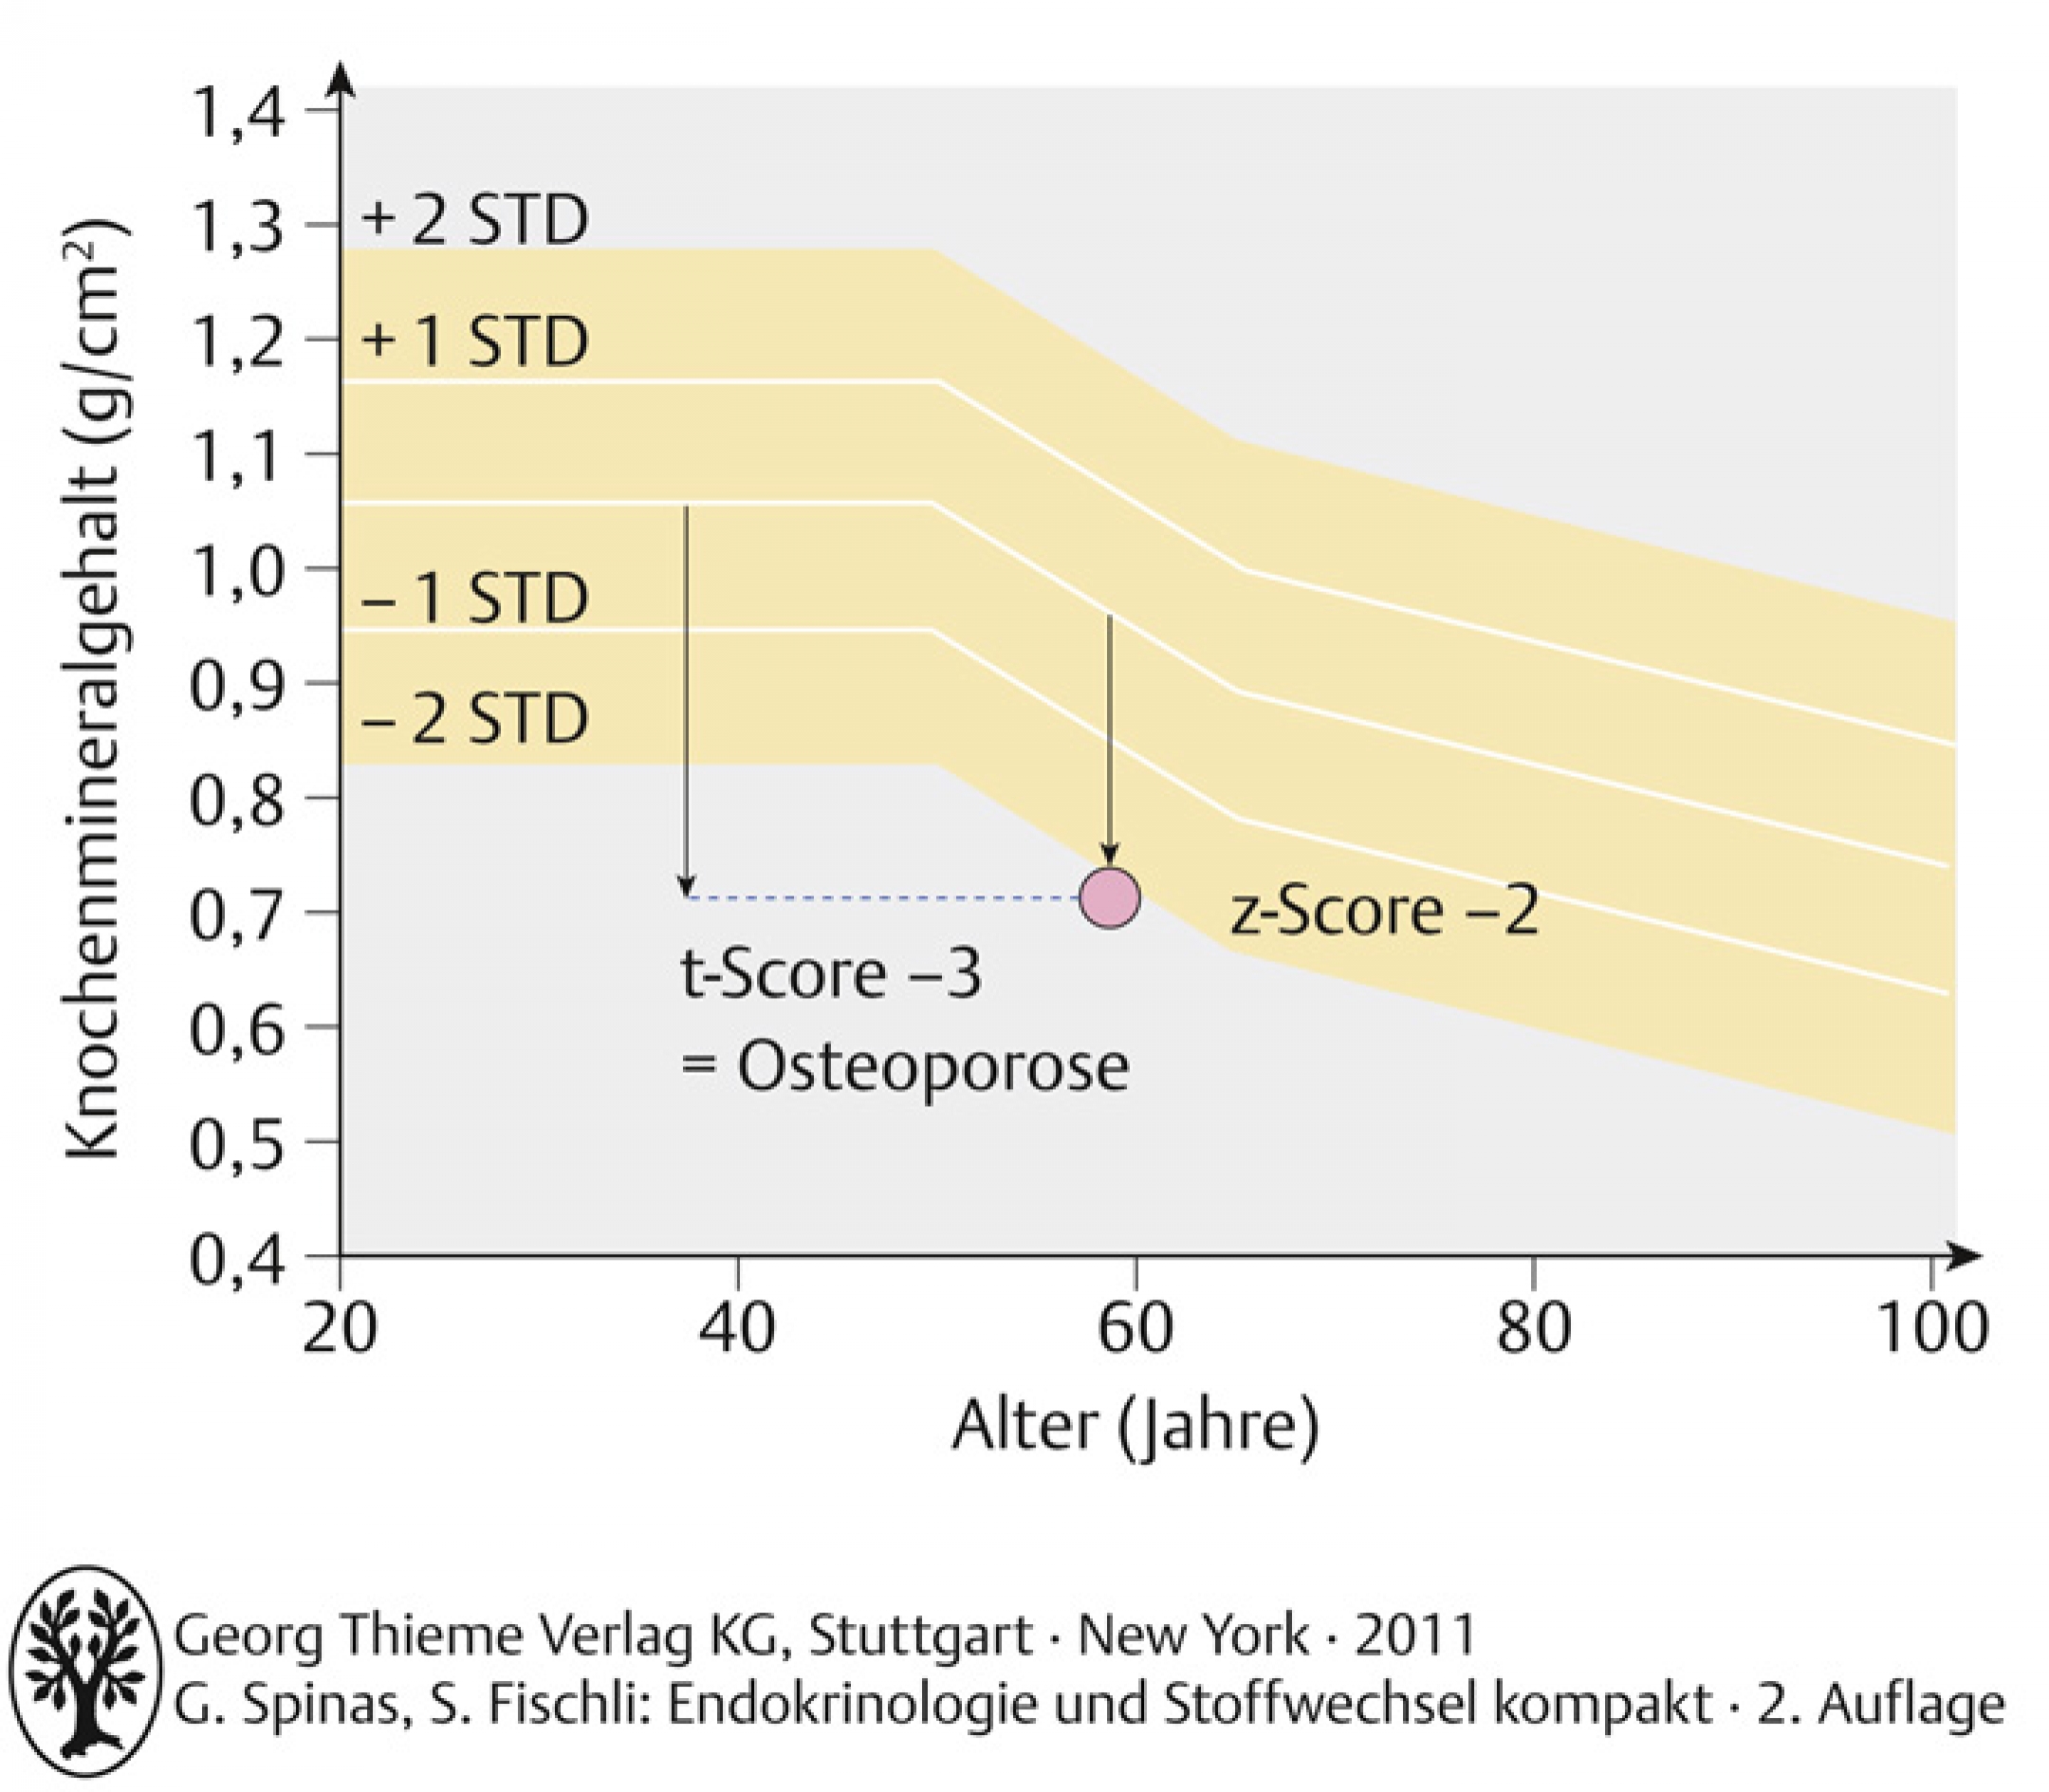 Densitometrieresultat einer 60-jährigen Patientin. Das Messresultat liegt 2 Standardabweichungen (STD) unter dem altersentsprechenden Referenzwert (z-Score: -2 SD). Im Vergleich mit prämenopausalen Frauen liegt der Messwert 3 SD unterhalb des Referenzwertes (t-Score: - 3 SD= Osteoporose).